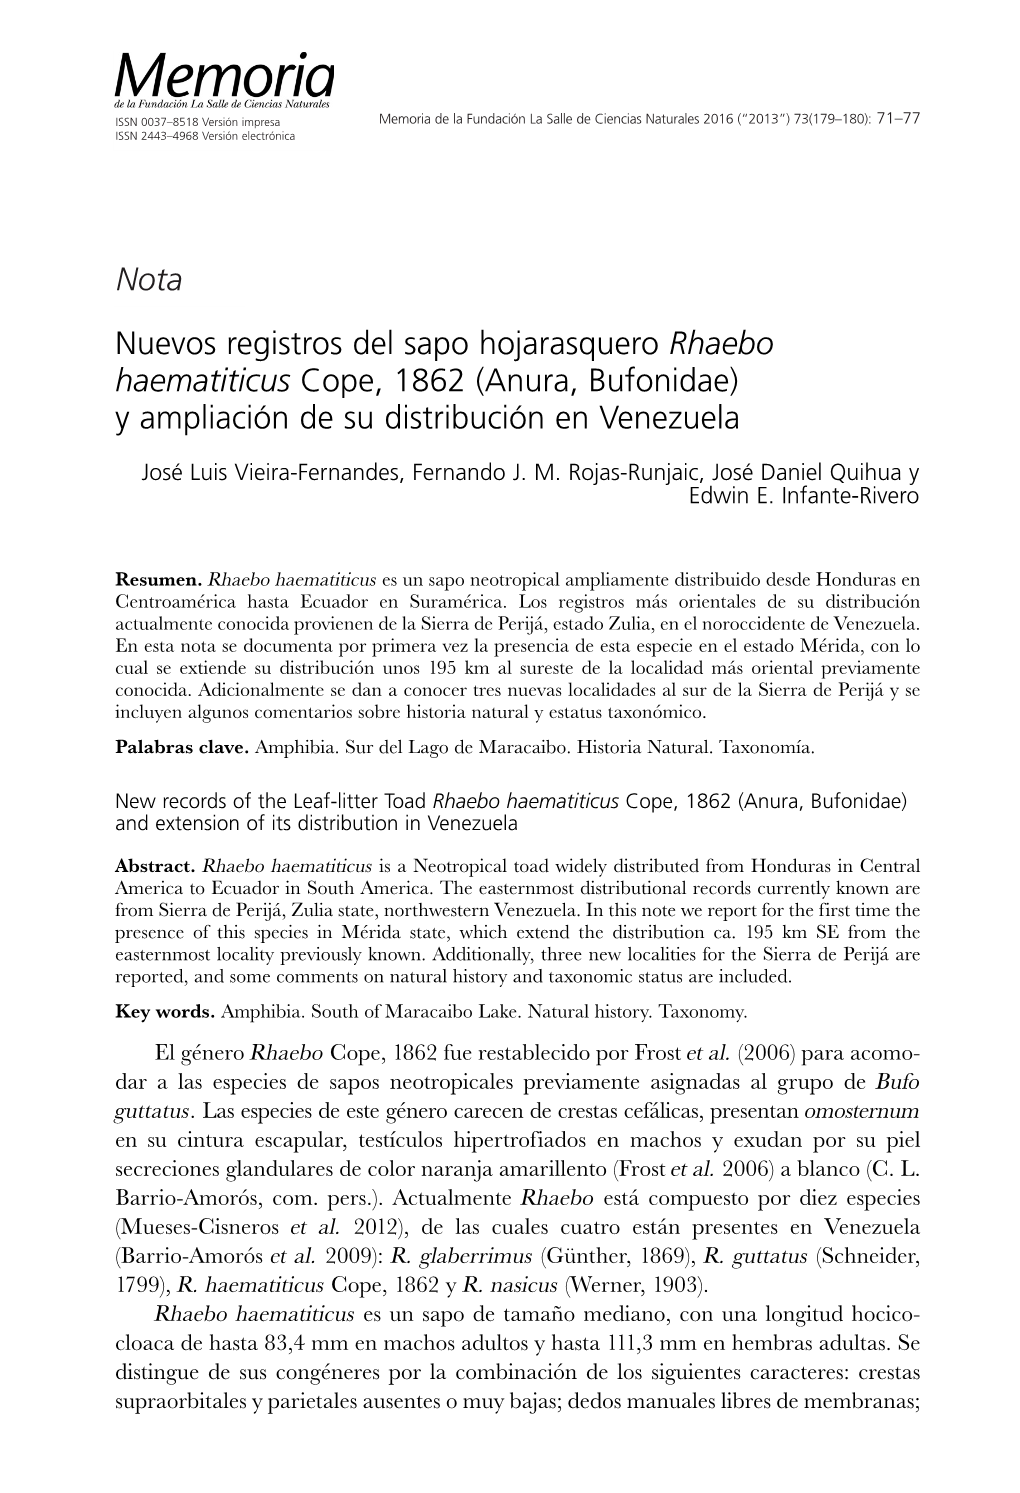 Nuevos Registros Del Sapo Hojarasquero Rhaebo Haematiticus Cope, 1862 (Anura, Bufonidae) Y Ampliación De Su Distribución En Venezuela